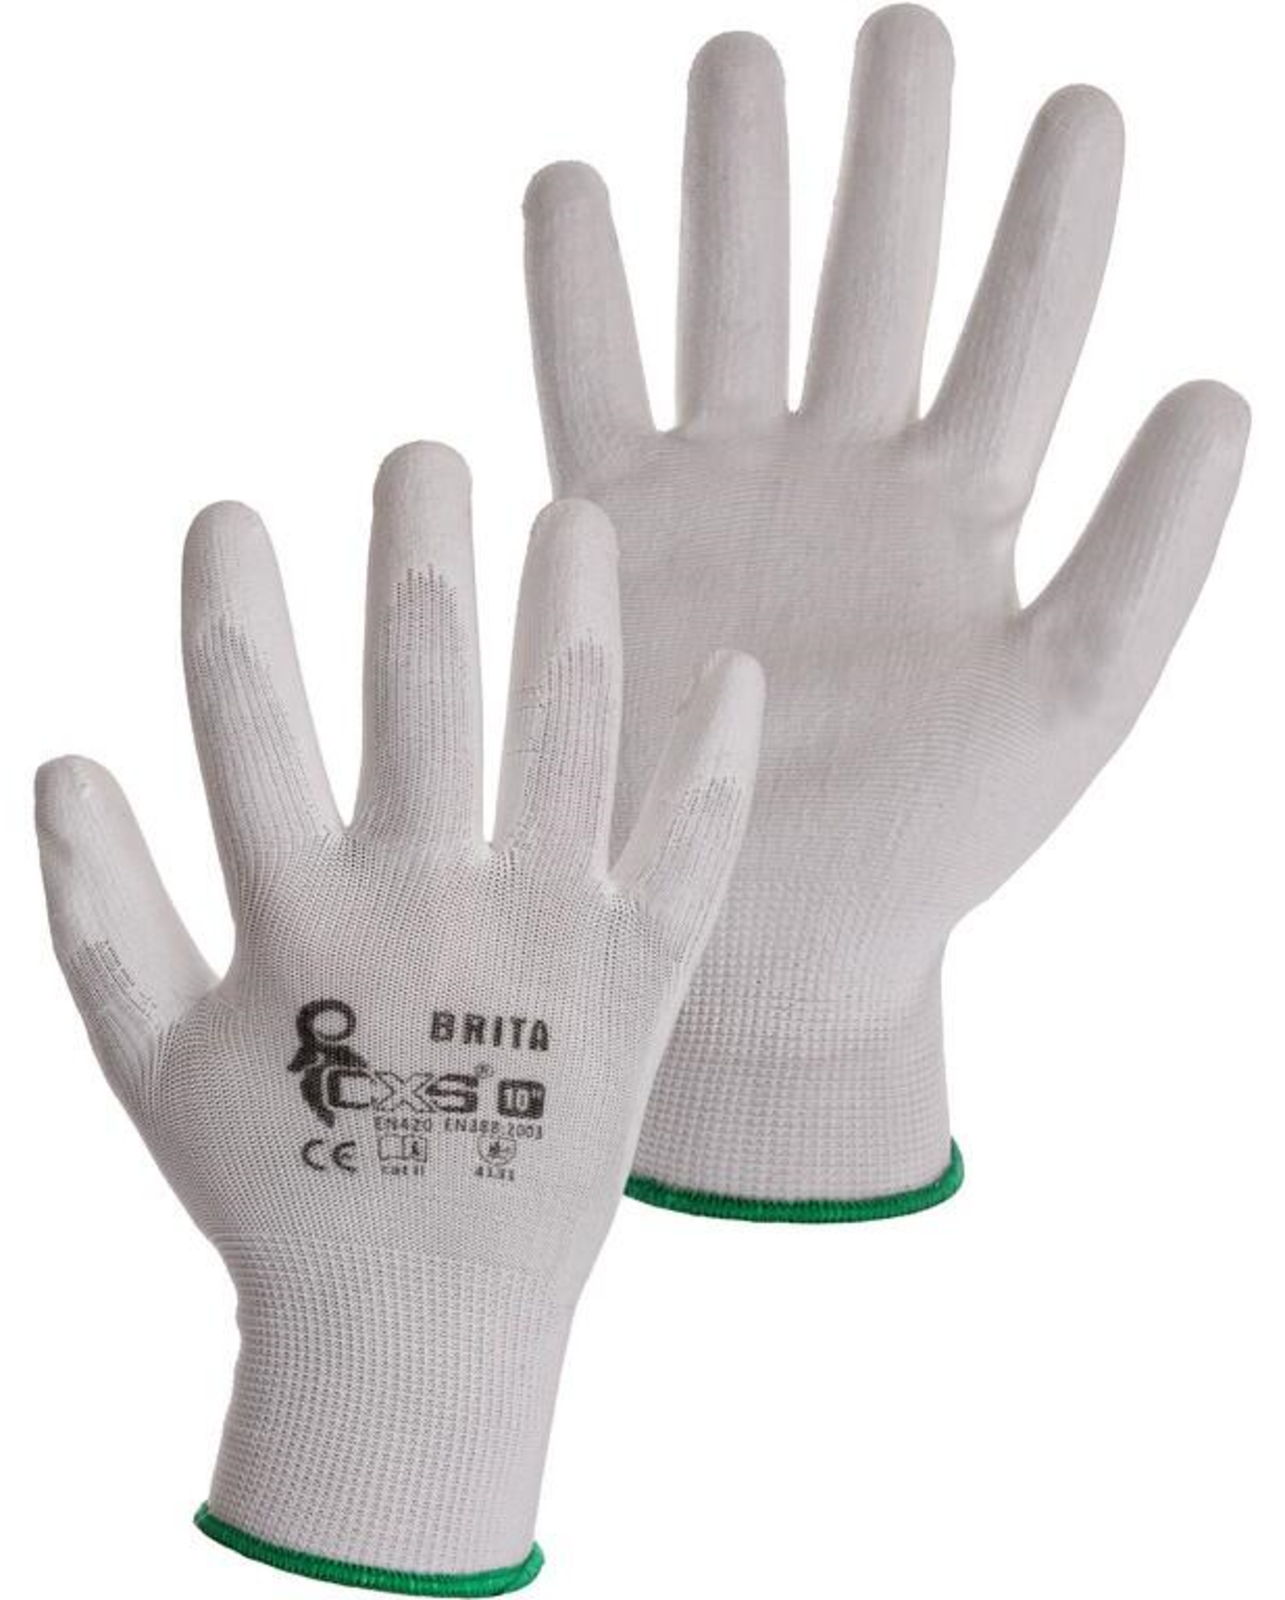 Pracovné rukavice CXS Brita biele - veľkosť: 9/L, farba: biela